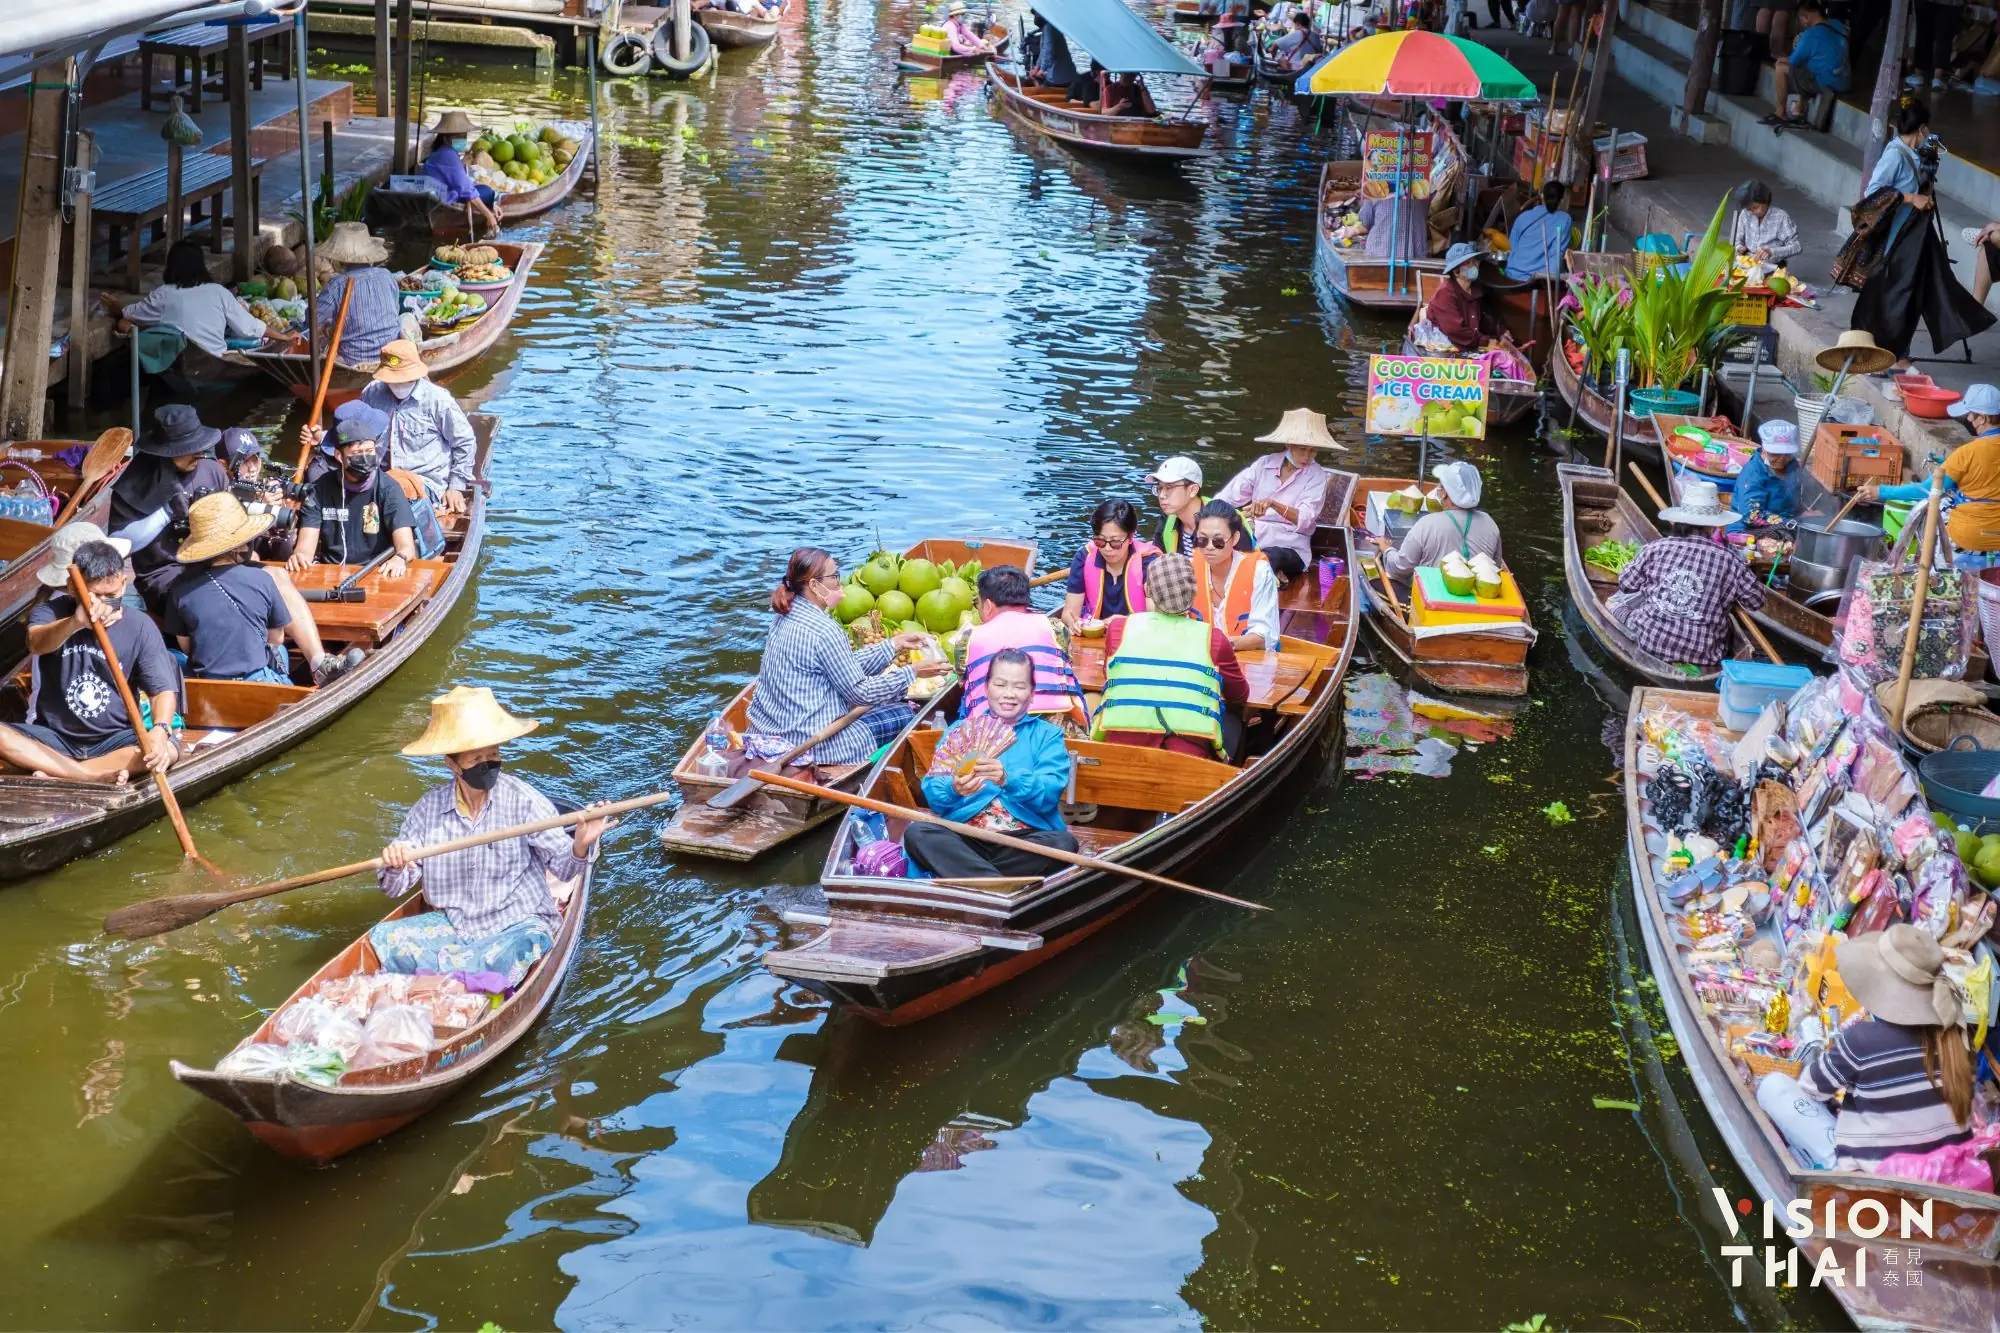 安帕瓦水上市场传统风貌保持得很好，是曼谷人假日最爱前往的水上市场（图片来源：Vision Thai 看见泰国）